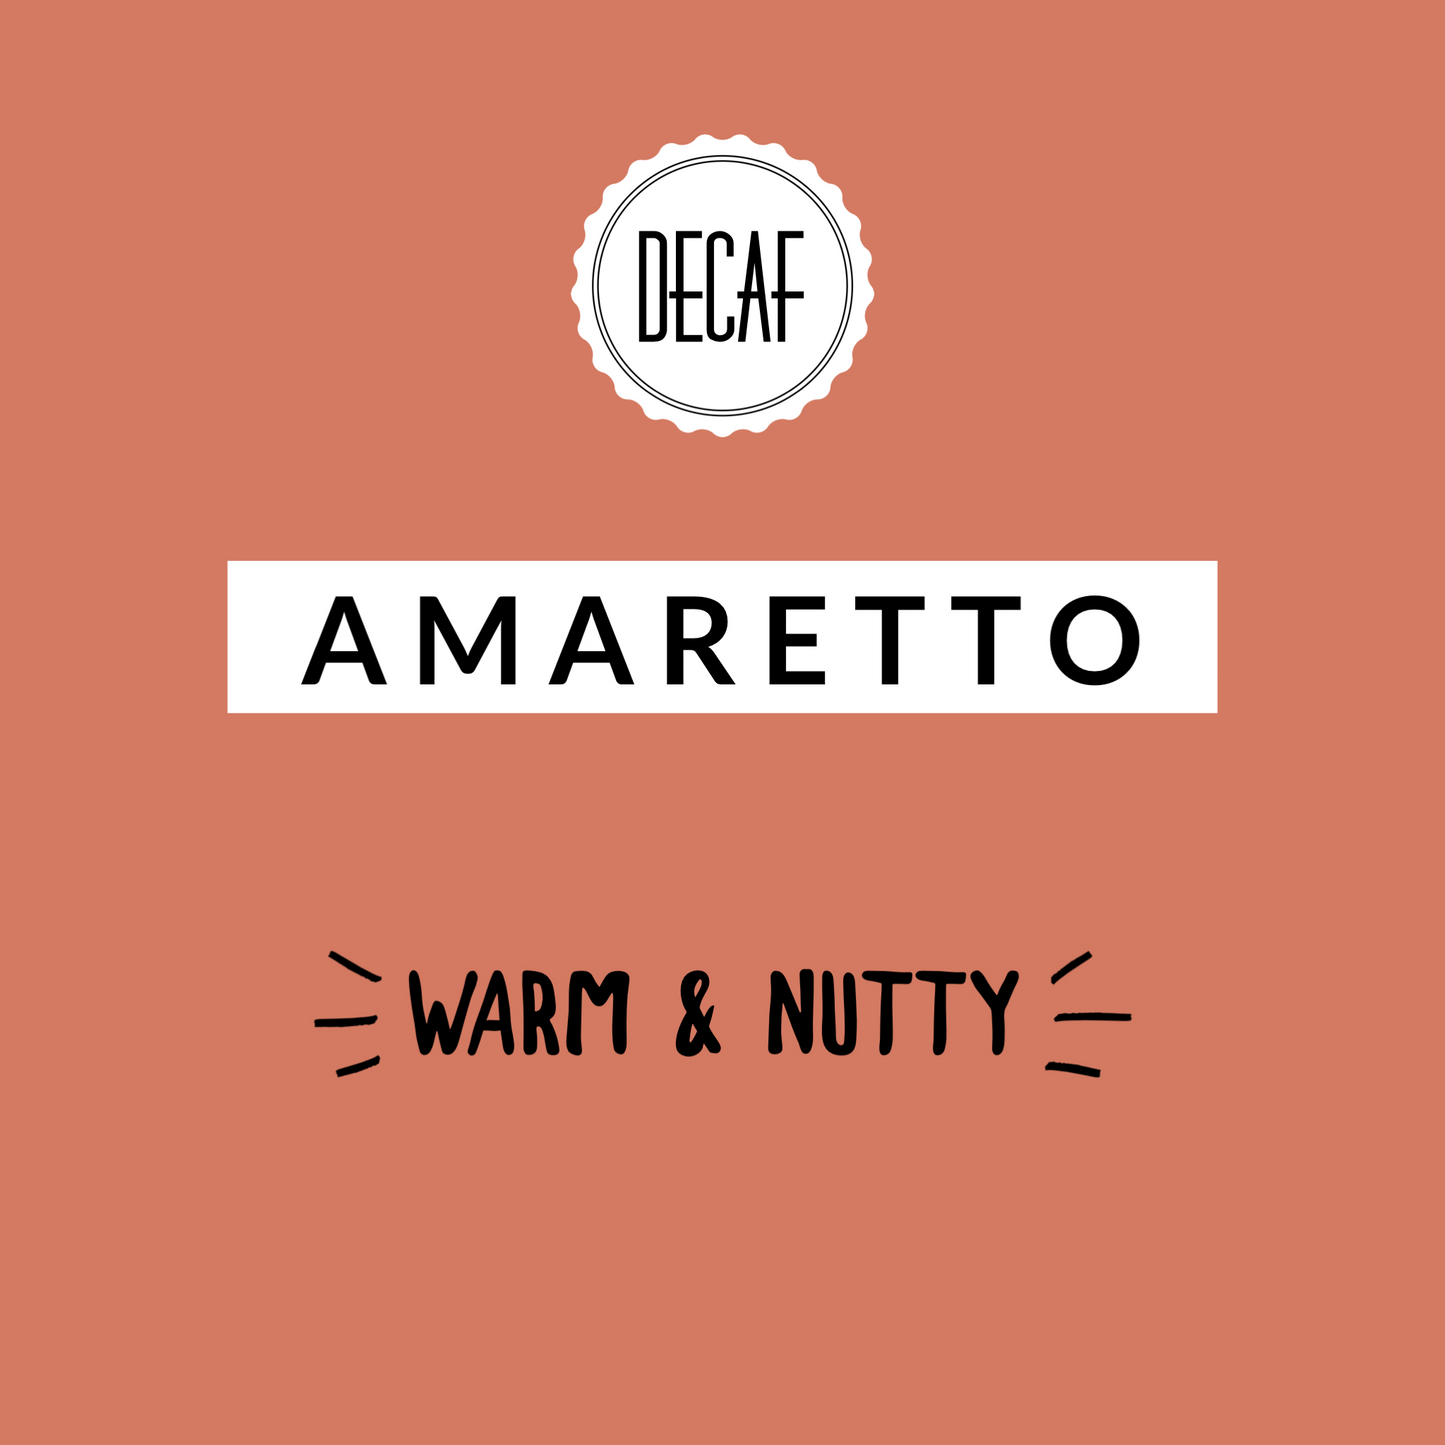 Amaretto Decaf